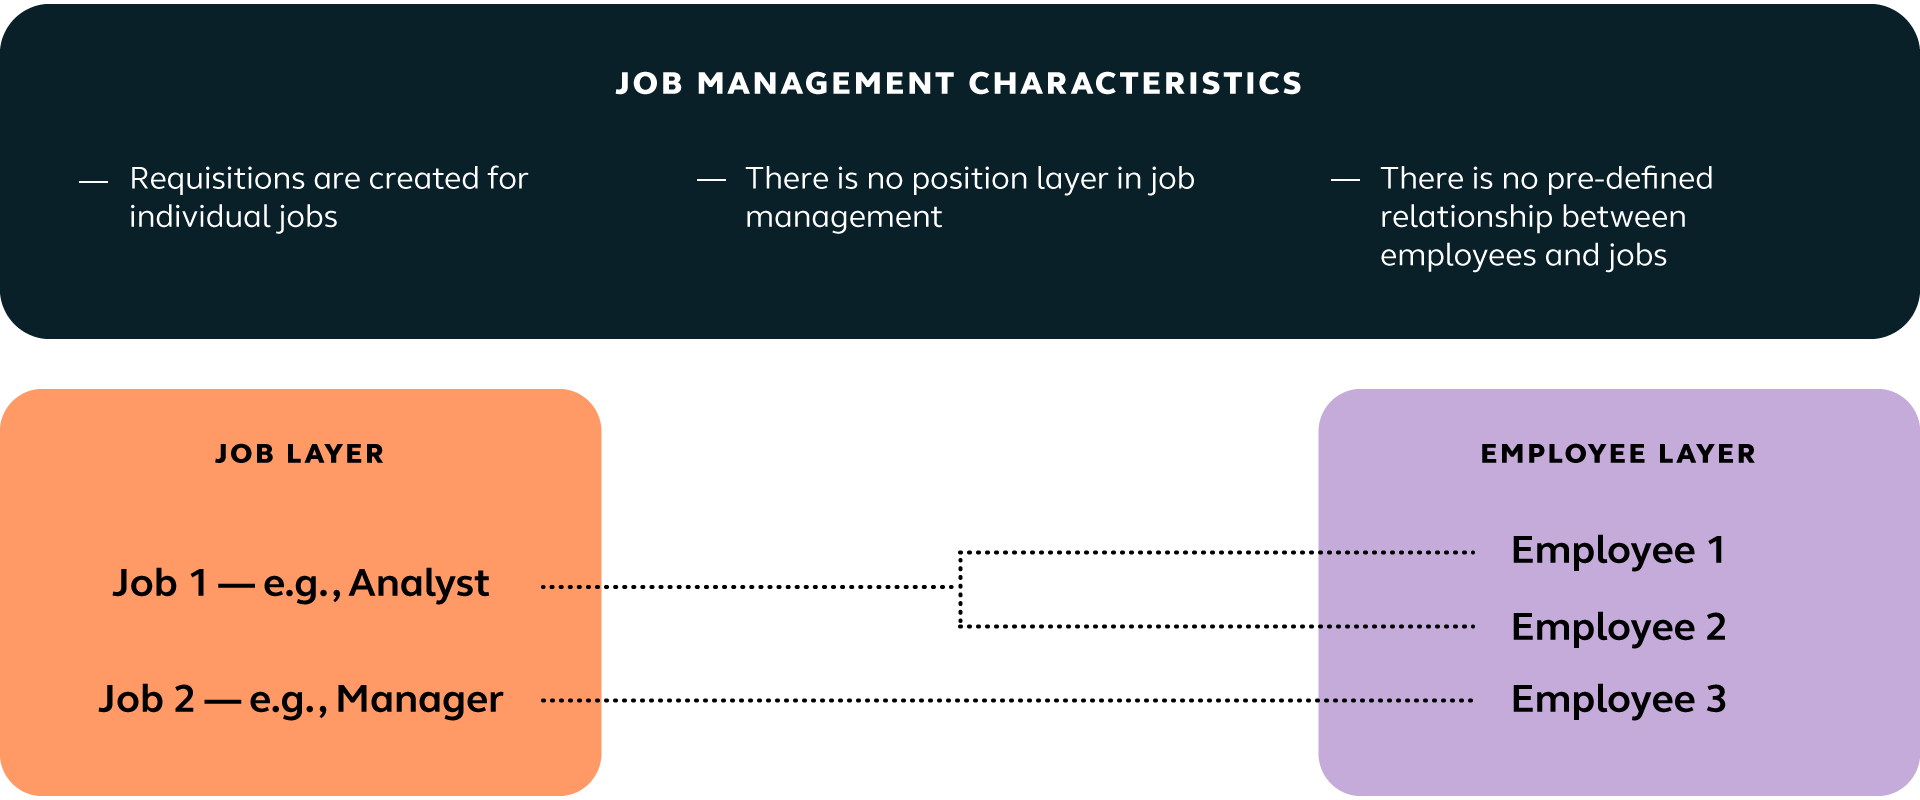 Job management characteristics